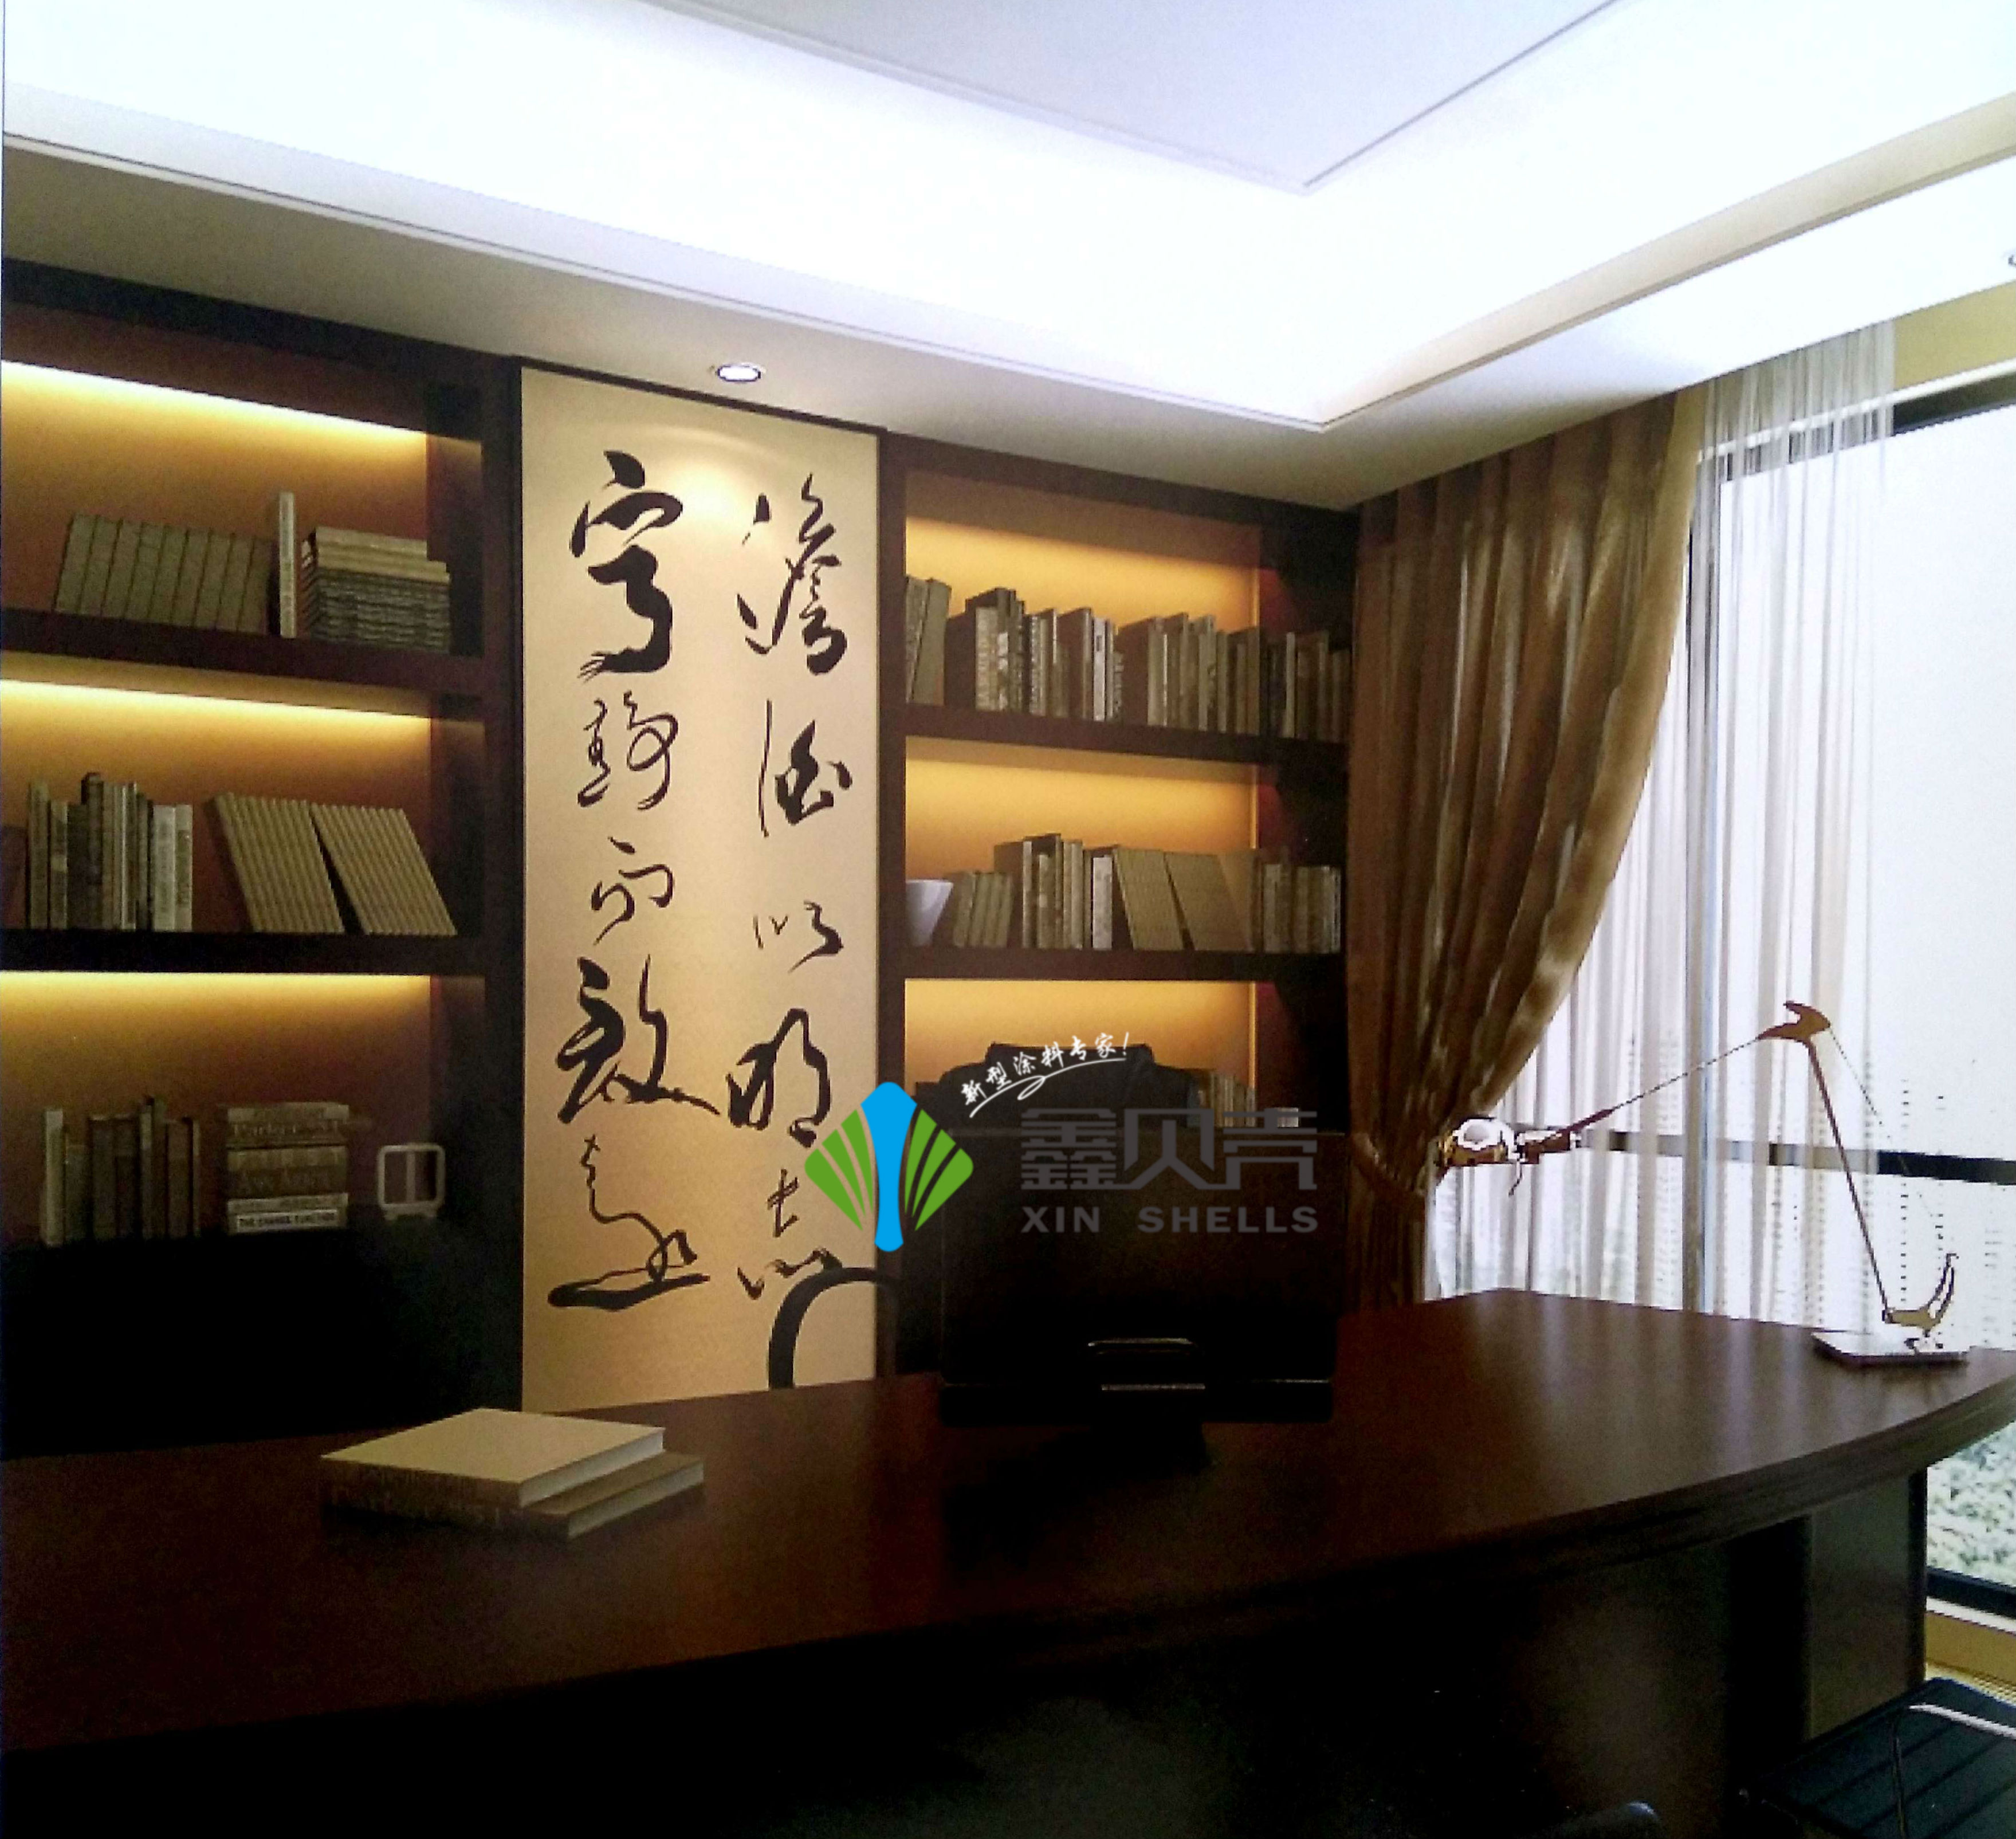 墙壁上的东方古韵,中式书房才是最美的!